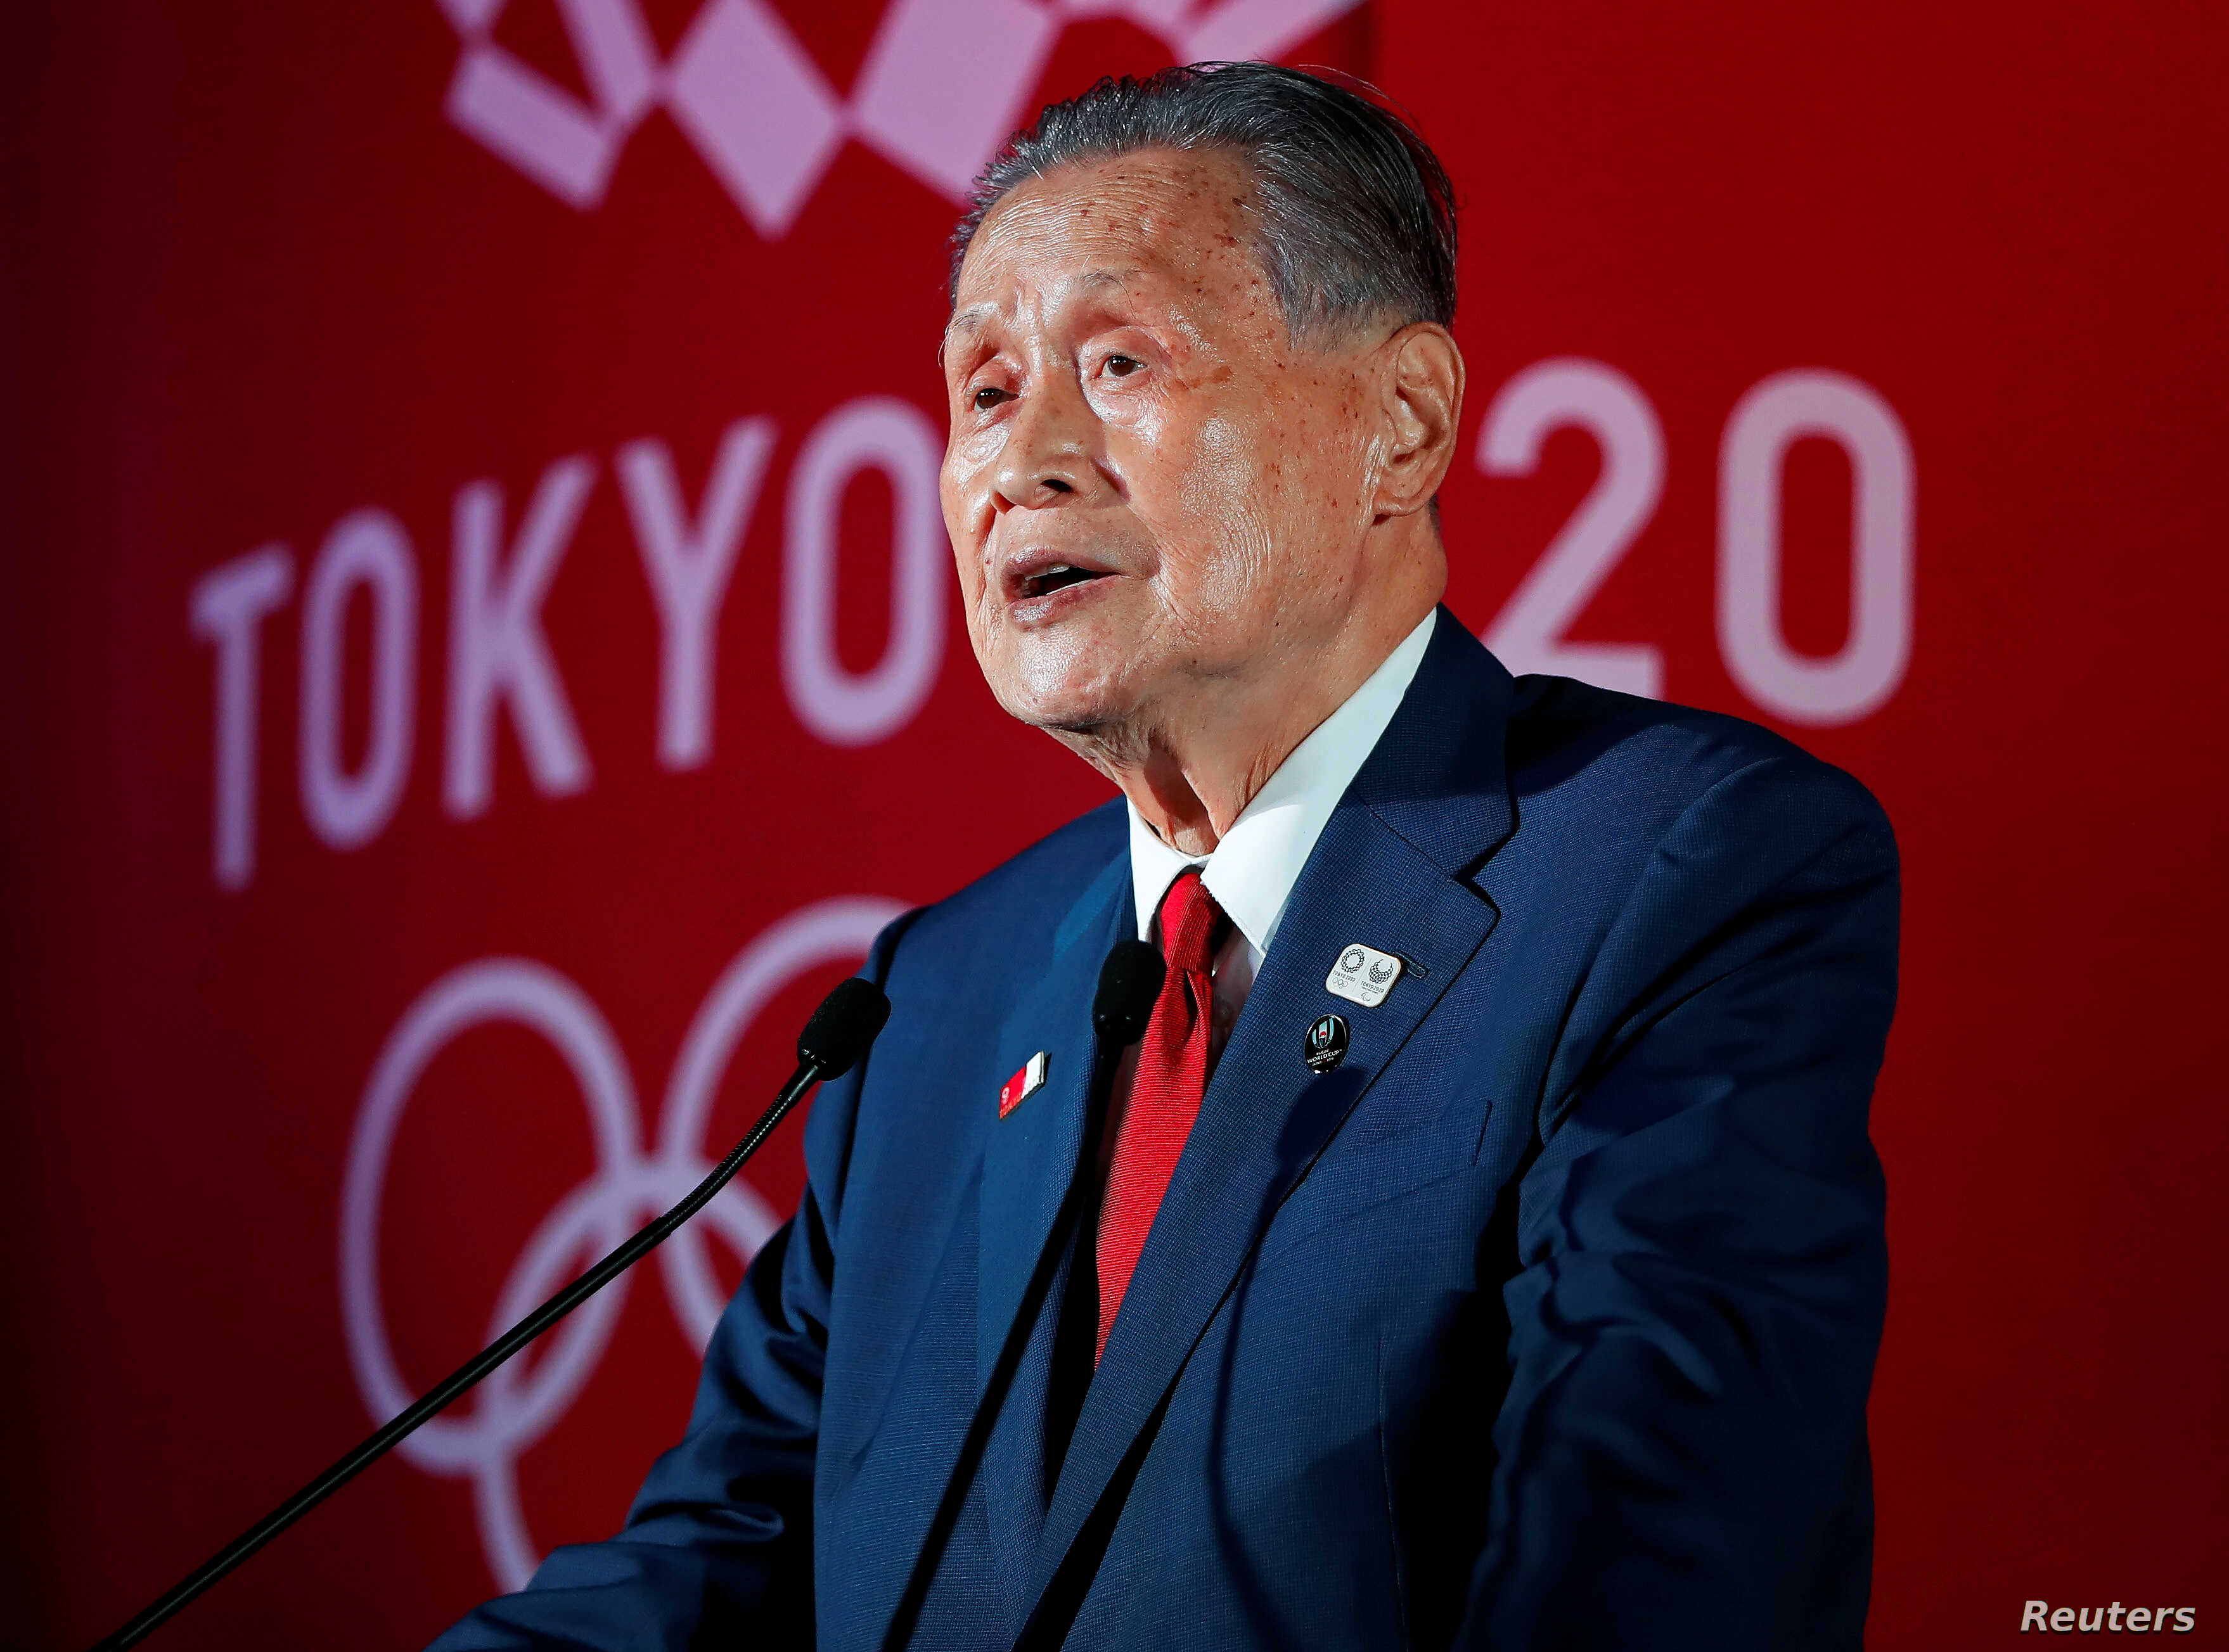 ٹوکیو اولمپک کے سربراہ نے توہین آمیز تبصرے کرنے کے معاملے میں استعفیٰ دے دیا